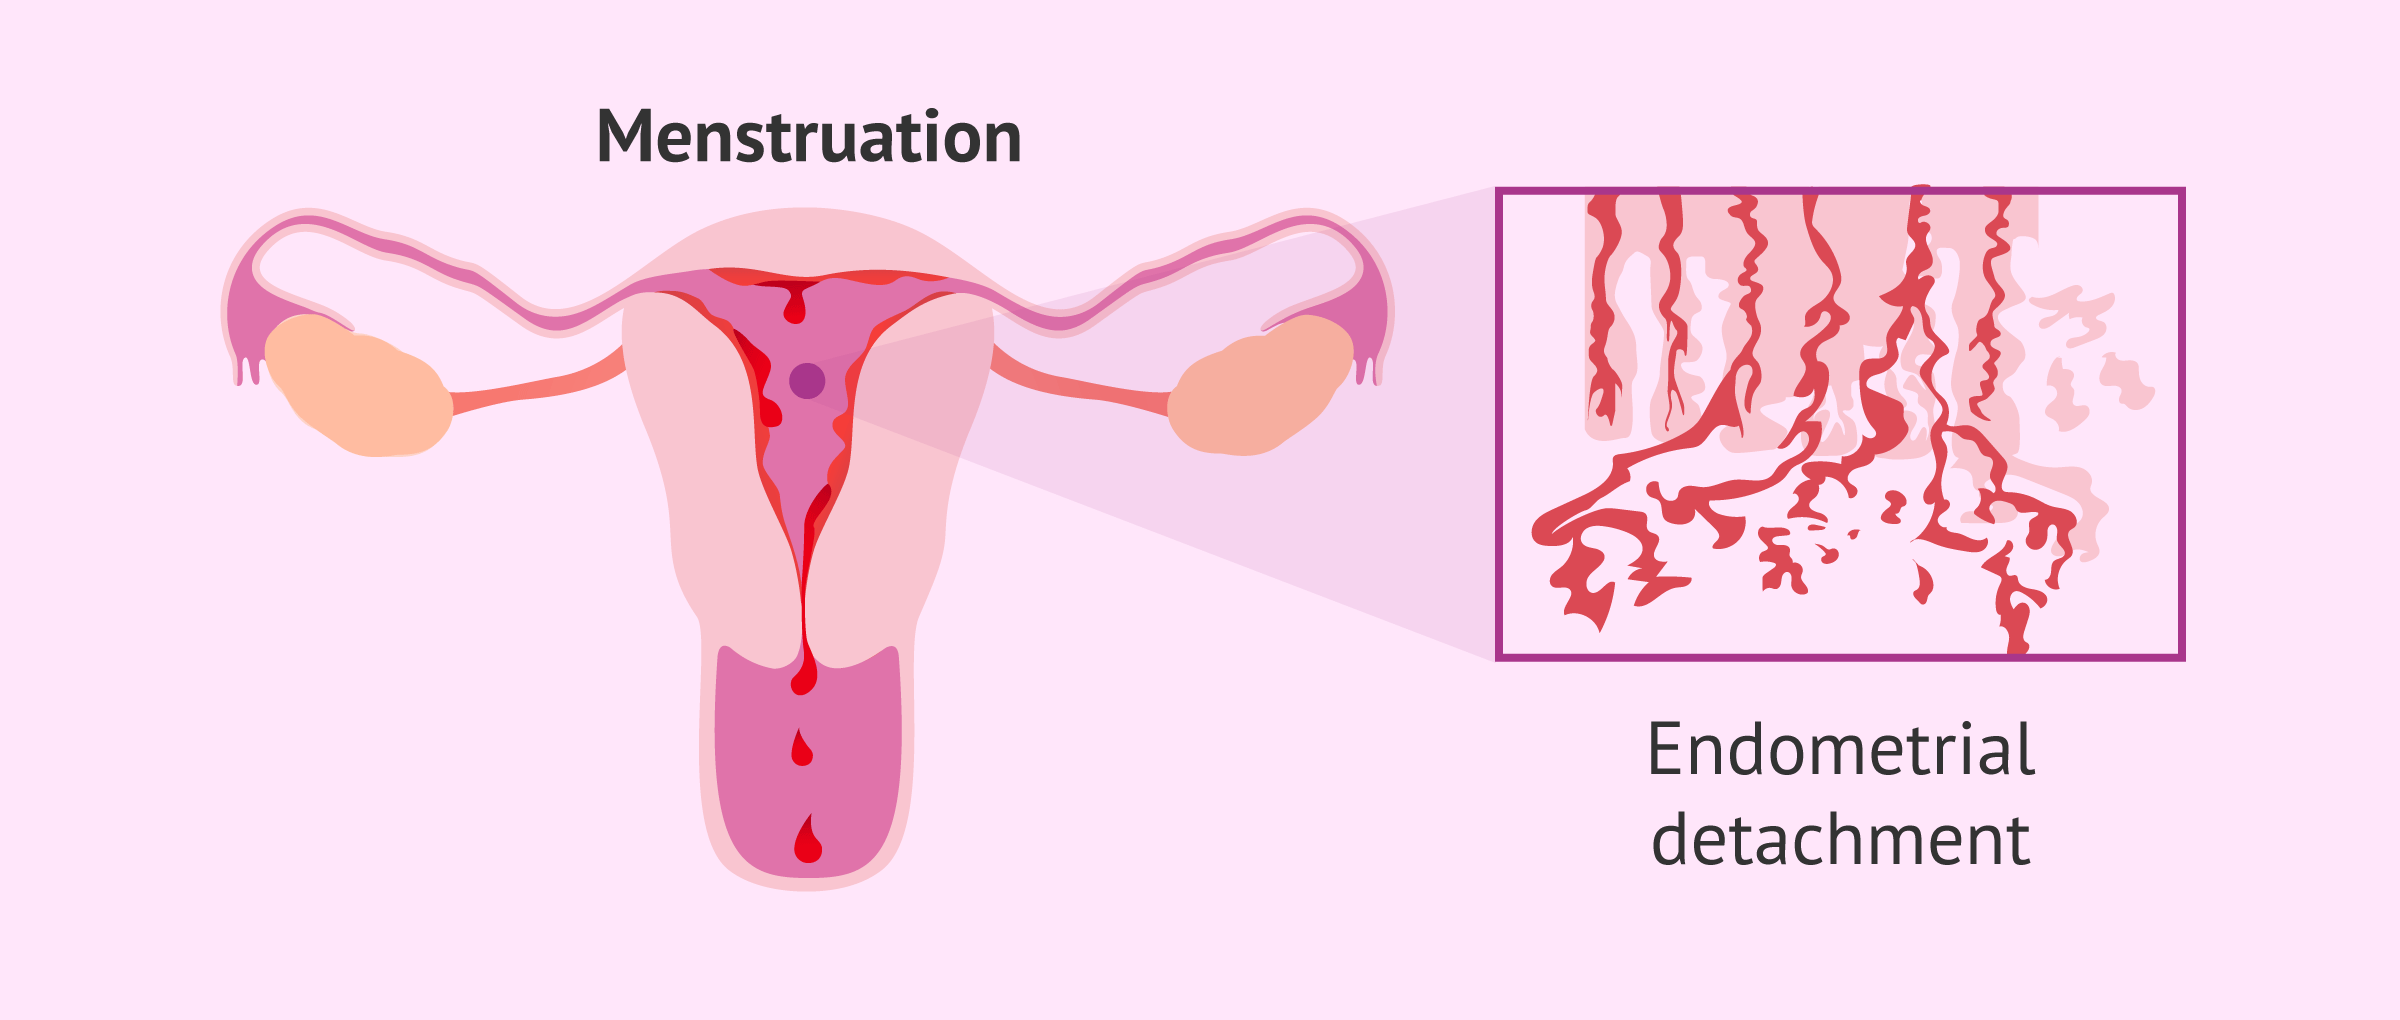 Menstruation: detachment of the endometrium